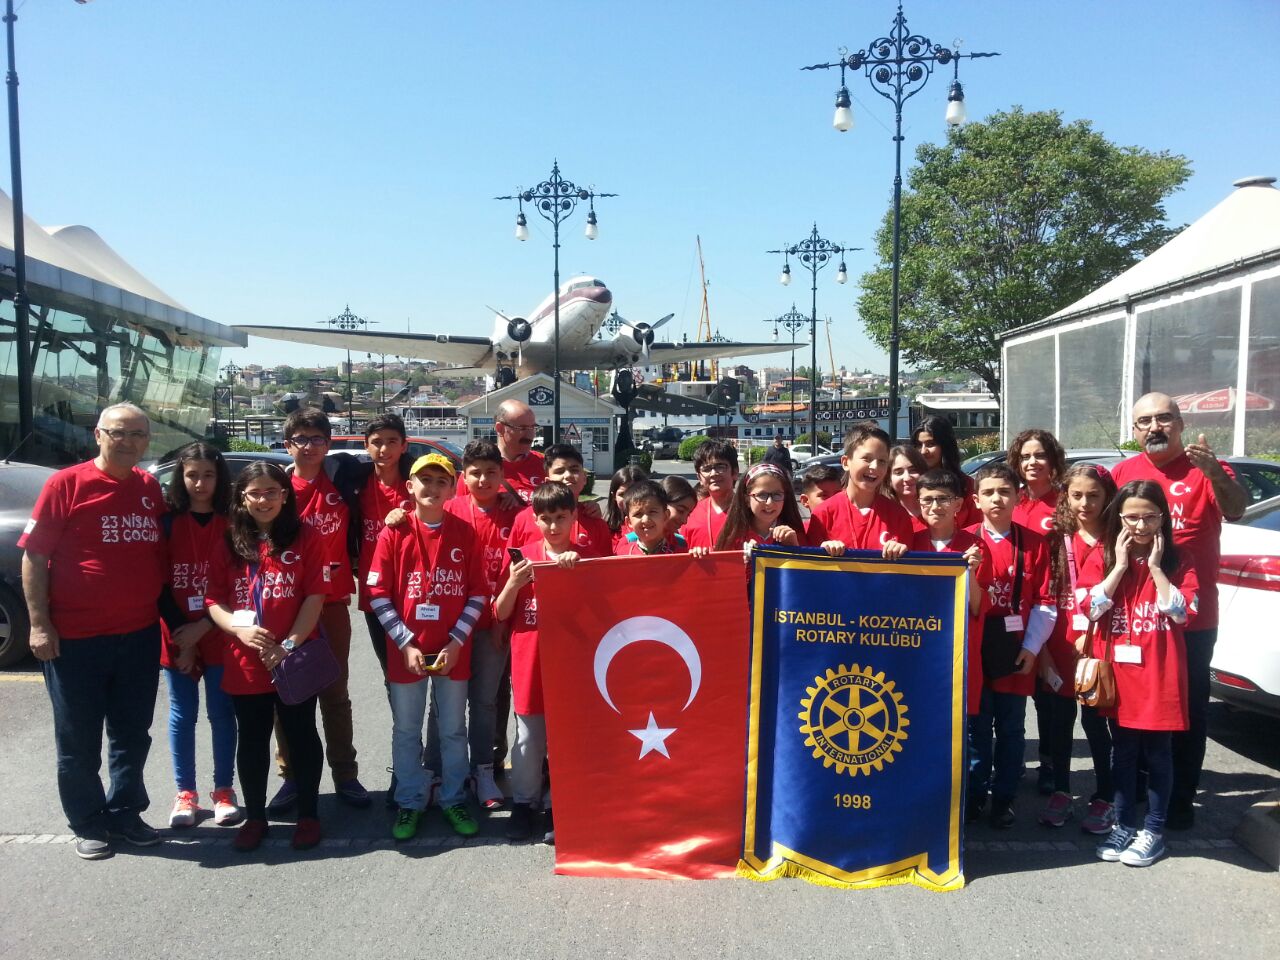 Kozyatağı Rotary Kulübü'nden 23 Nisan - 23 Çocuk projesi